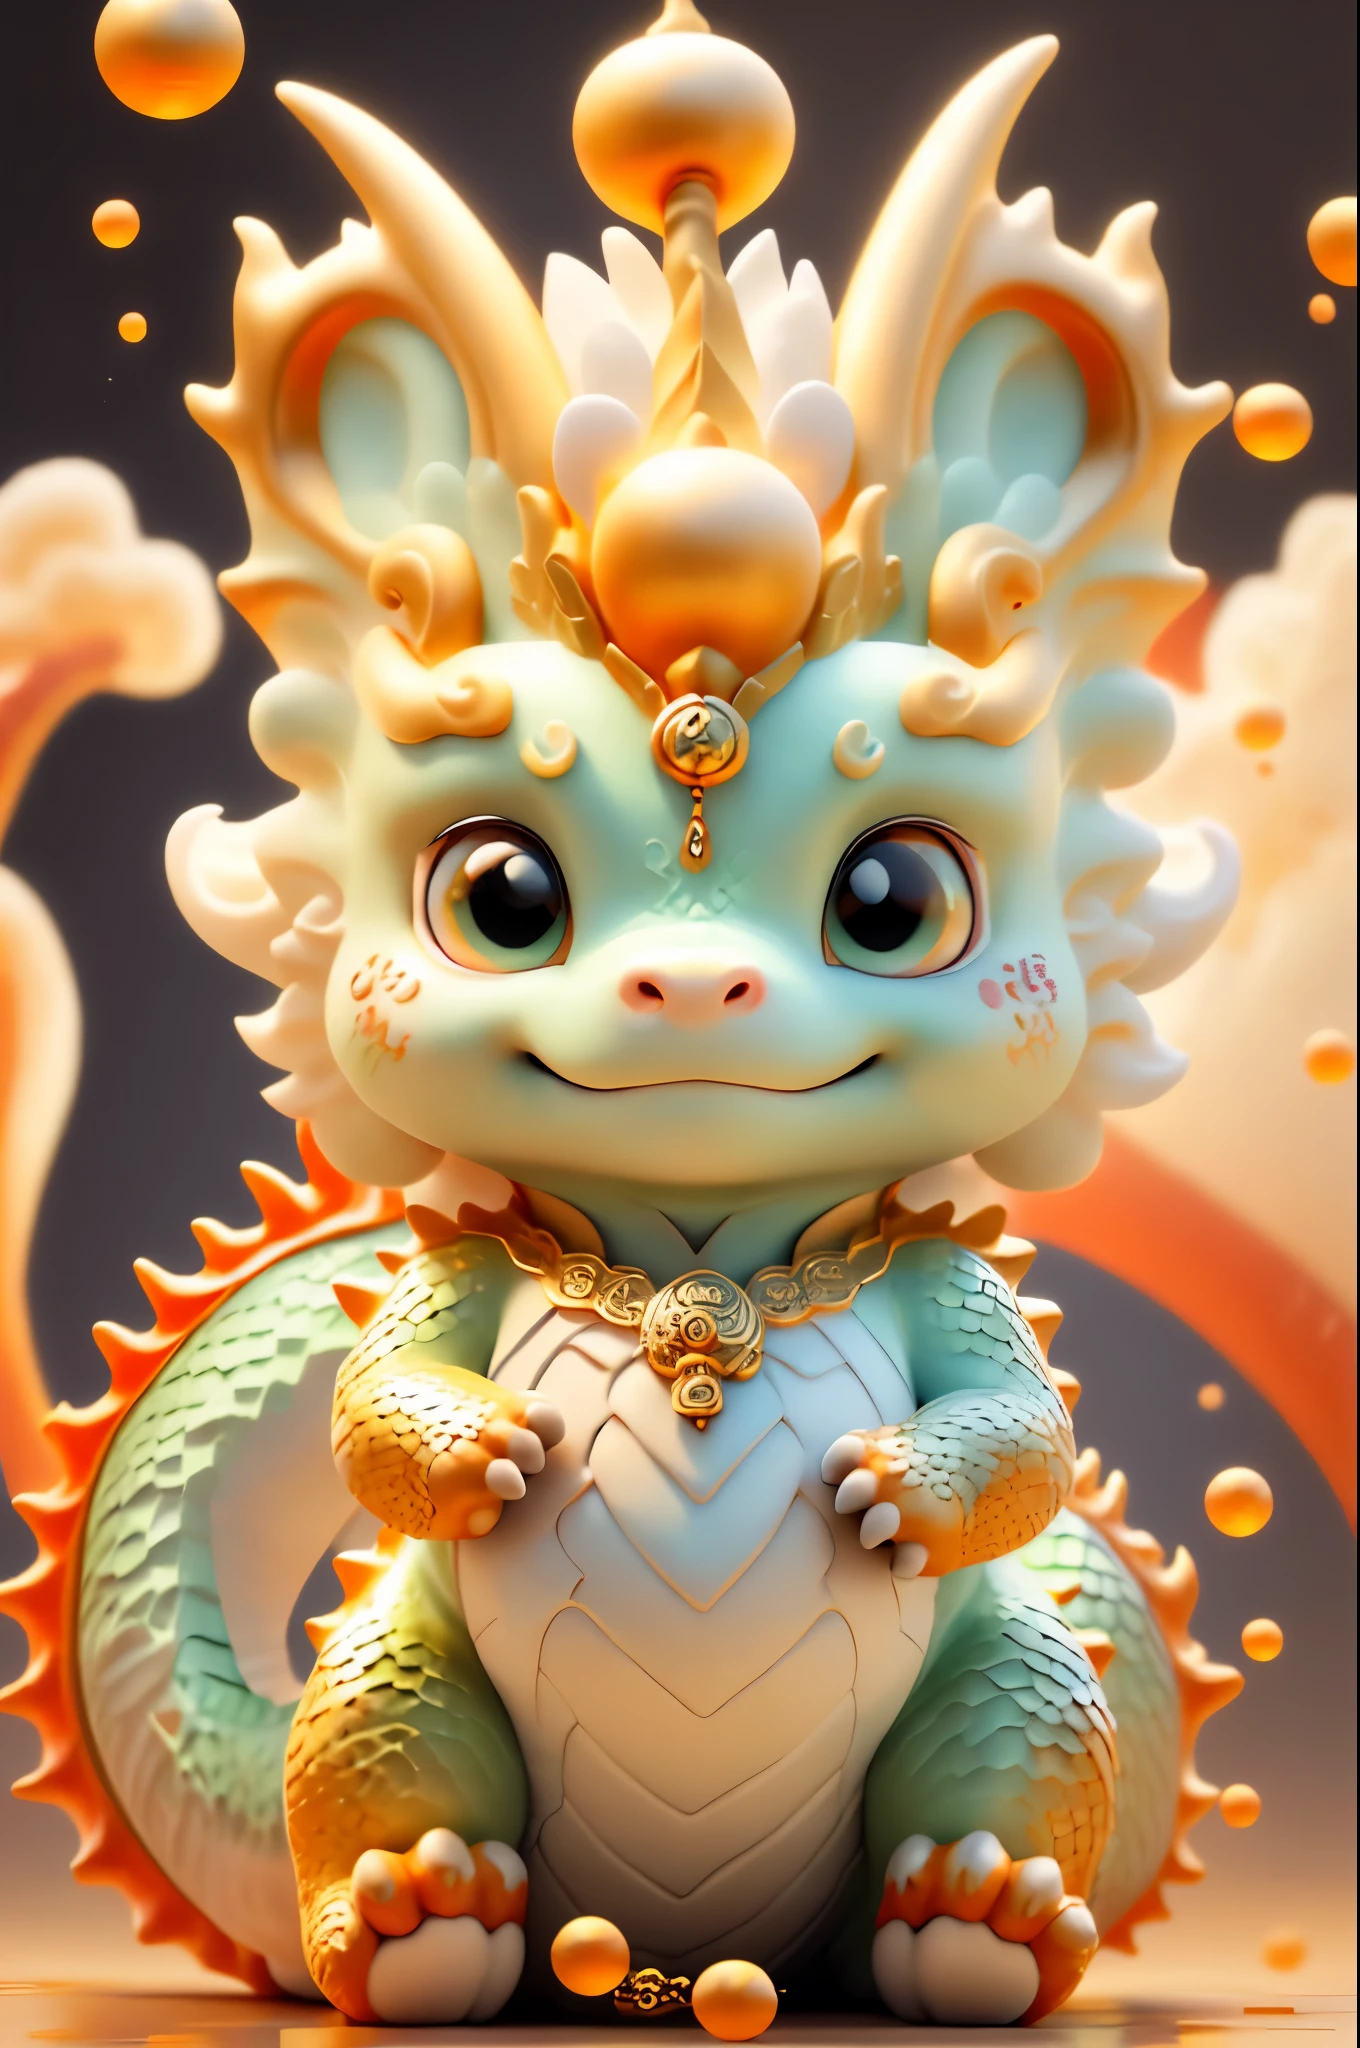 Dragão chinês，O fundo é casual，A qualidade da imagem é delicada，k hd，Expressão muito amigável，bebê dragão de água